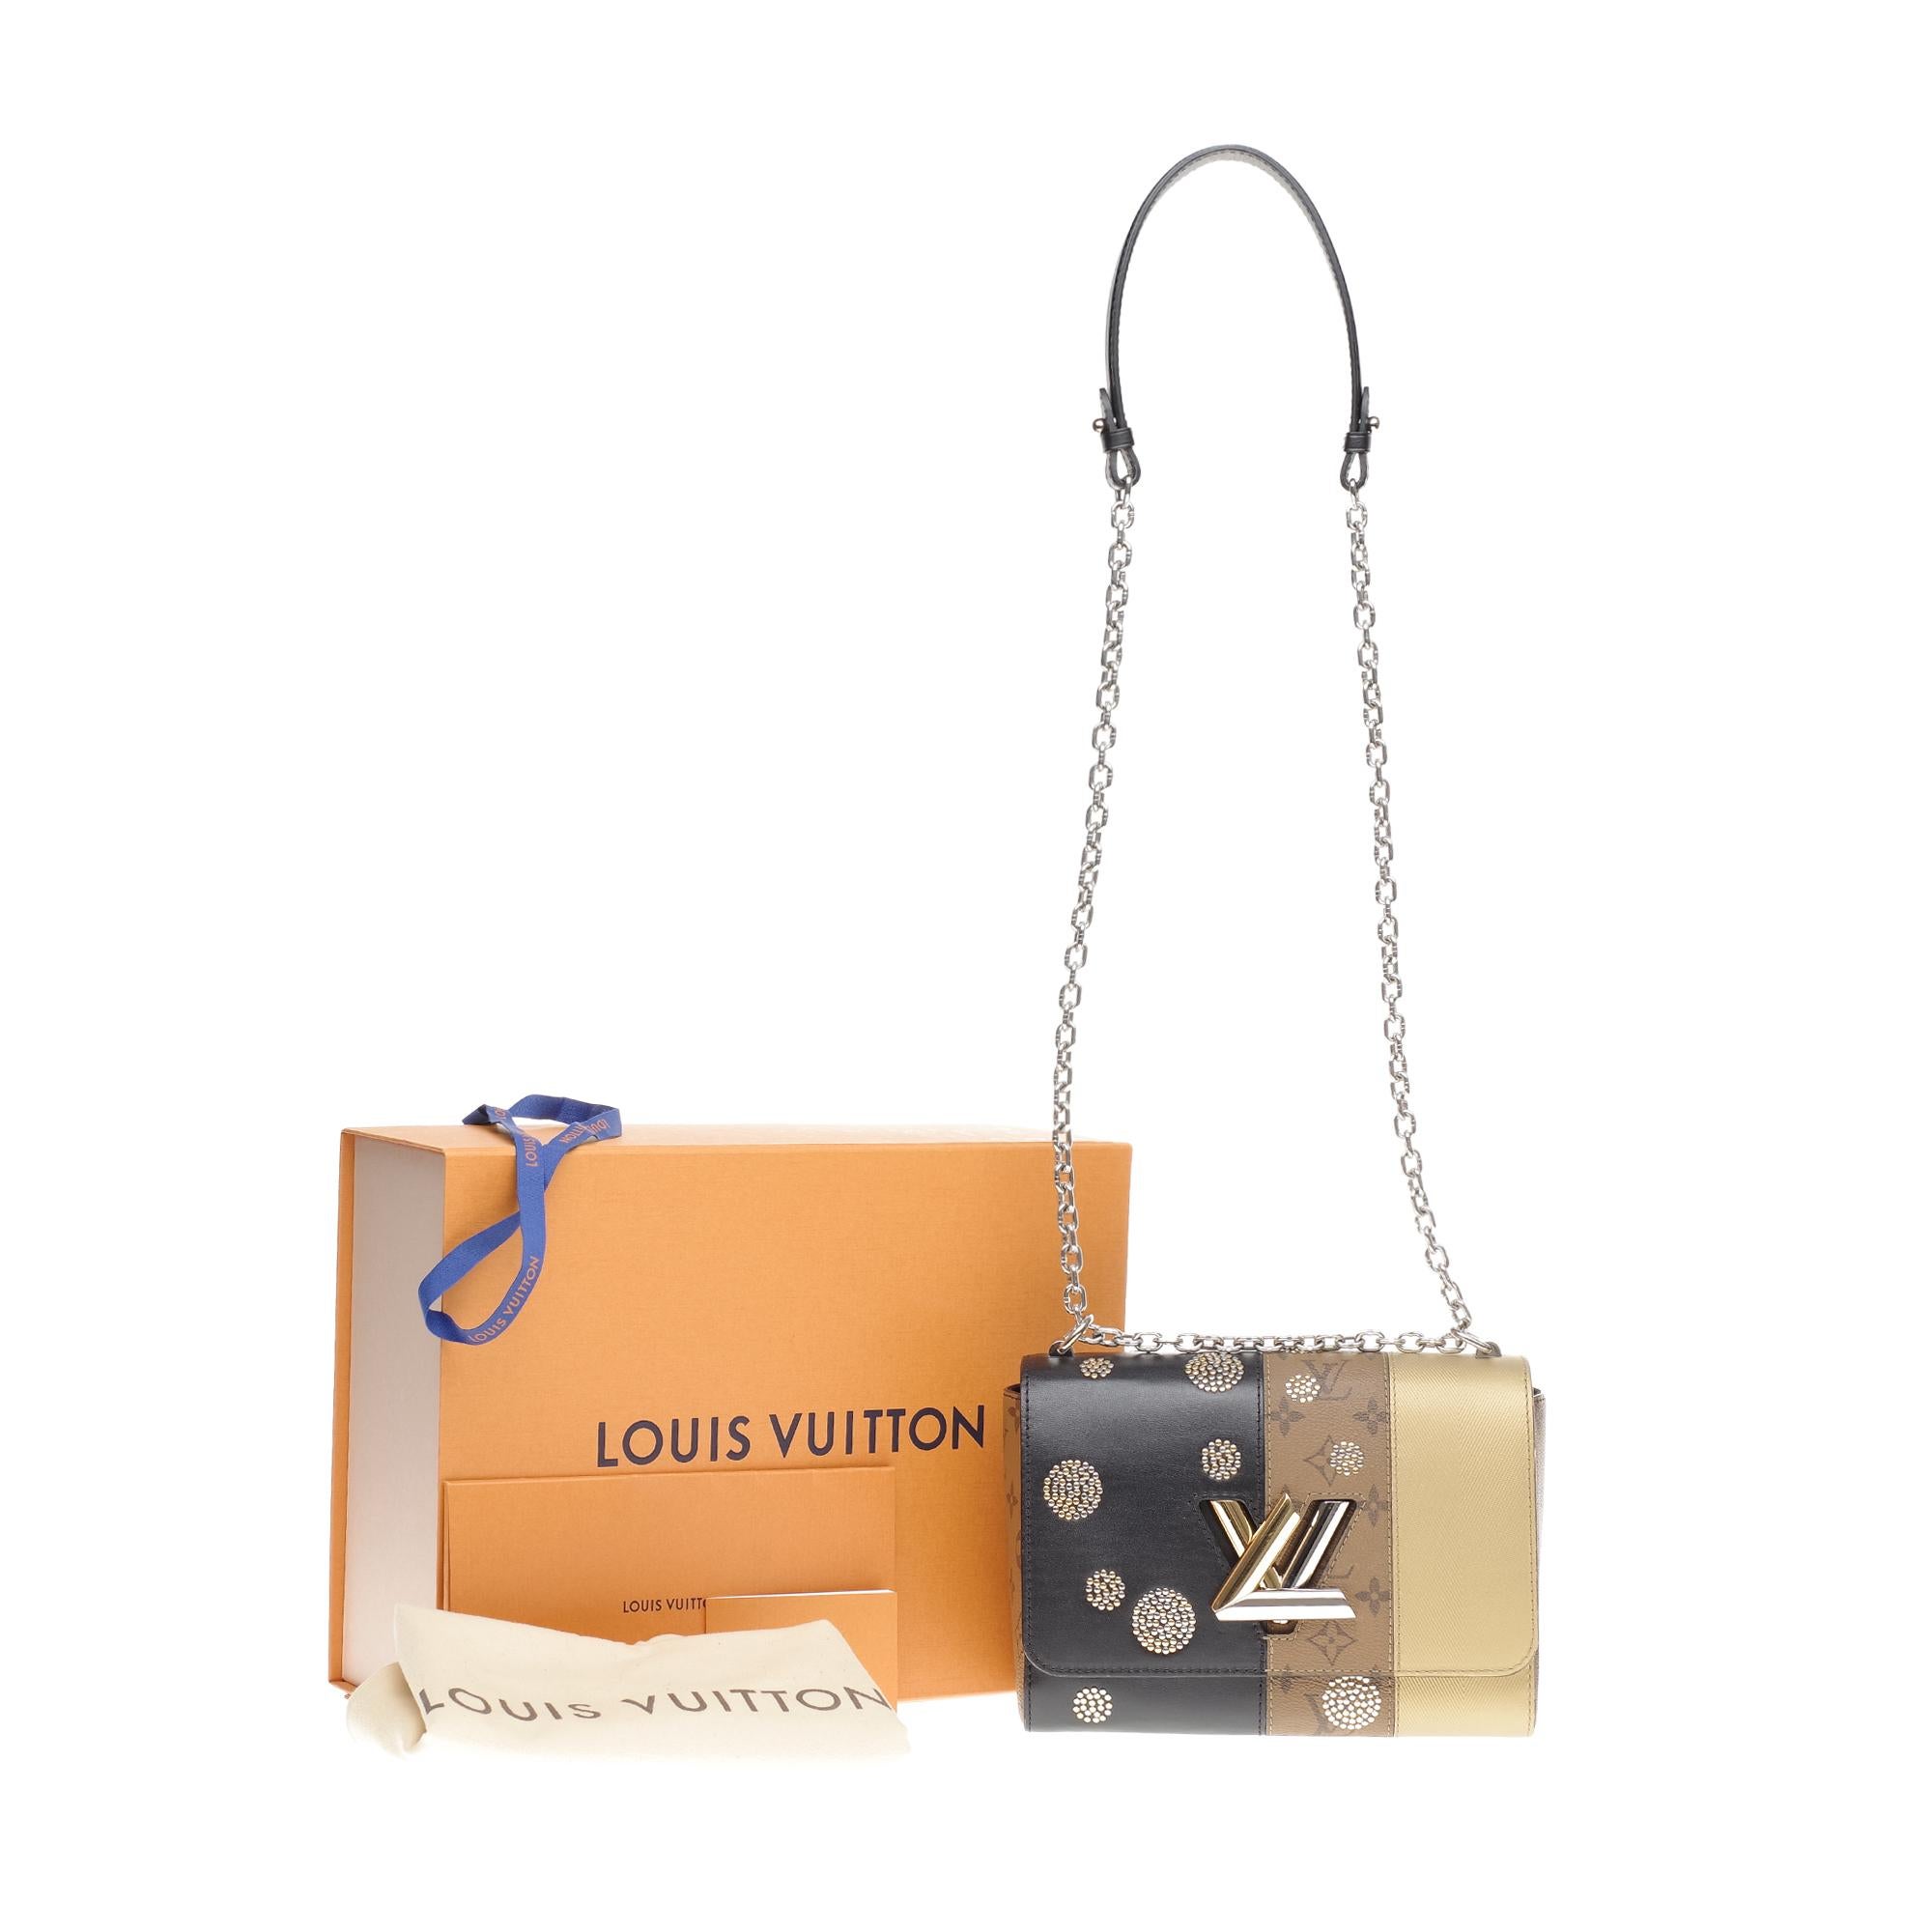 Limited Edition Louis Vuitton Twist MM Umhängetasche in epi Leder fast neu 9